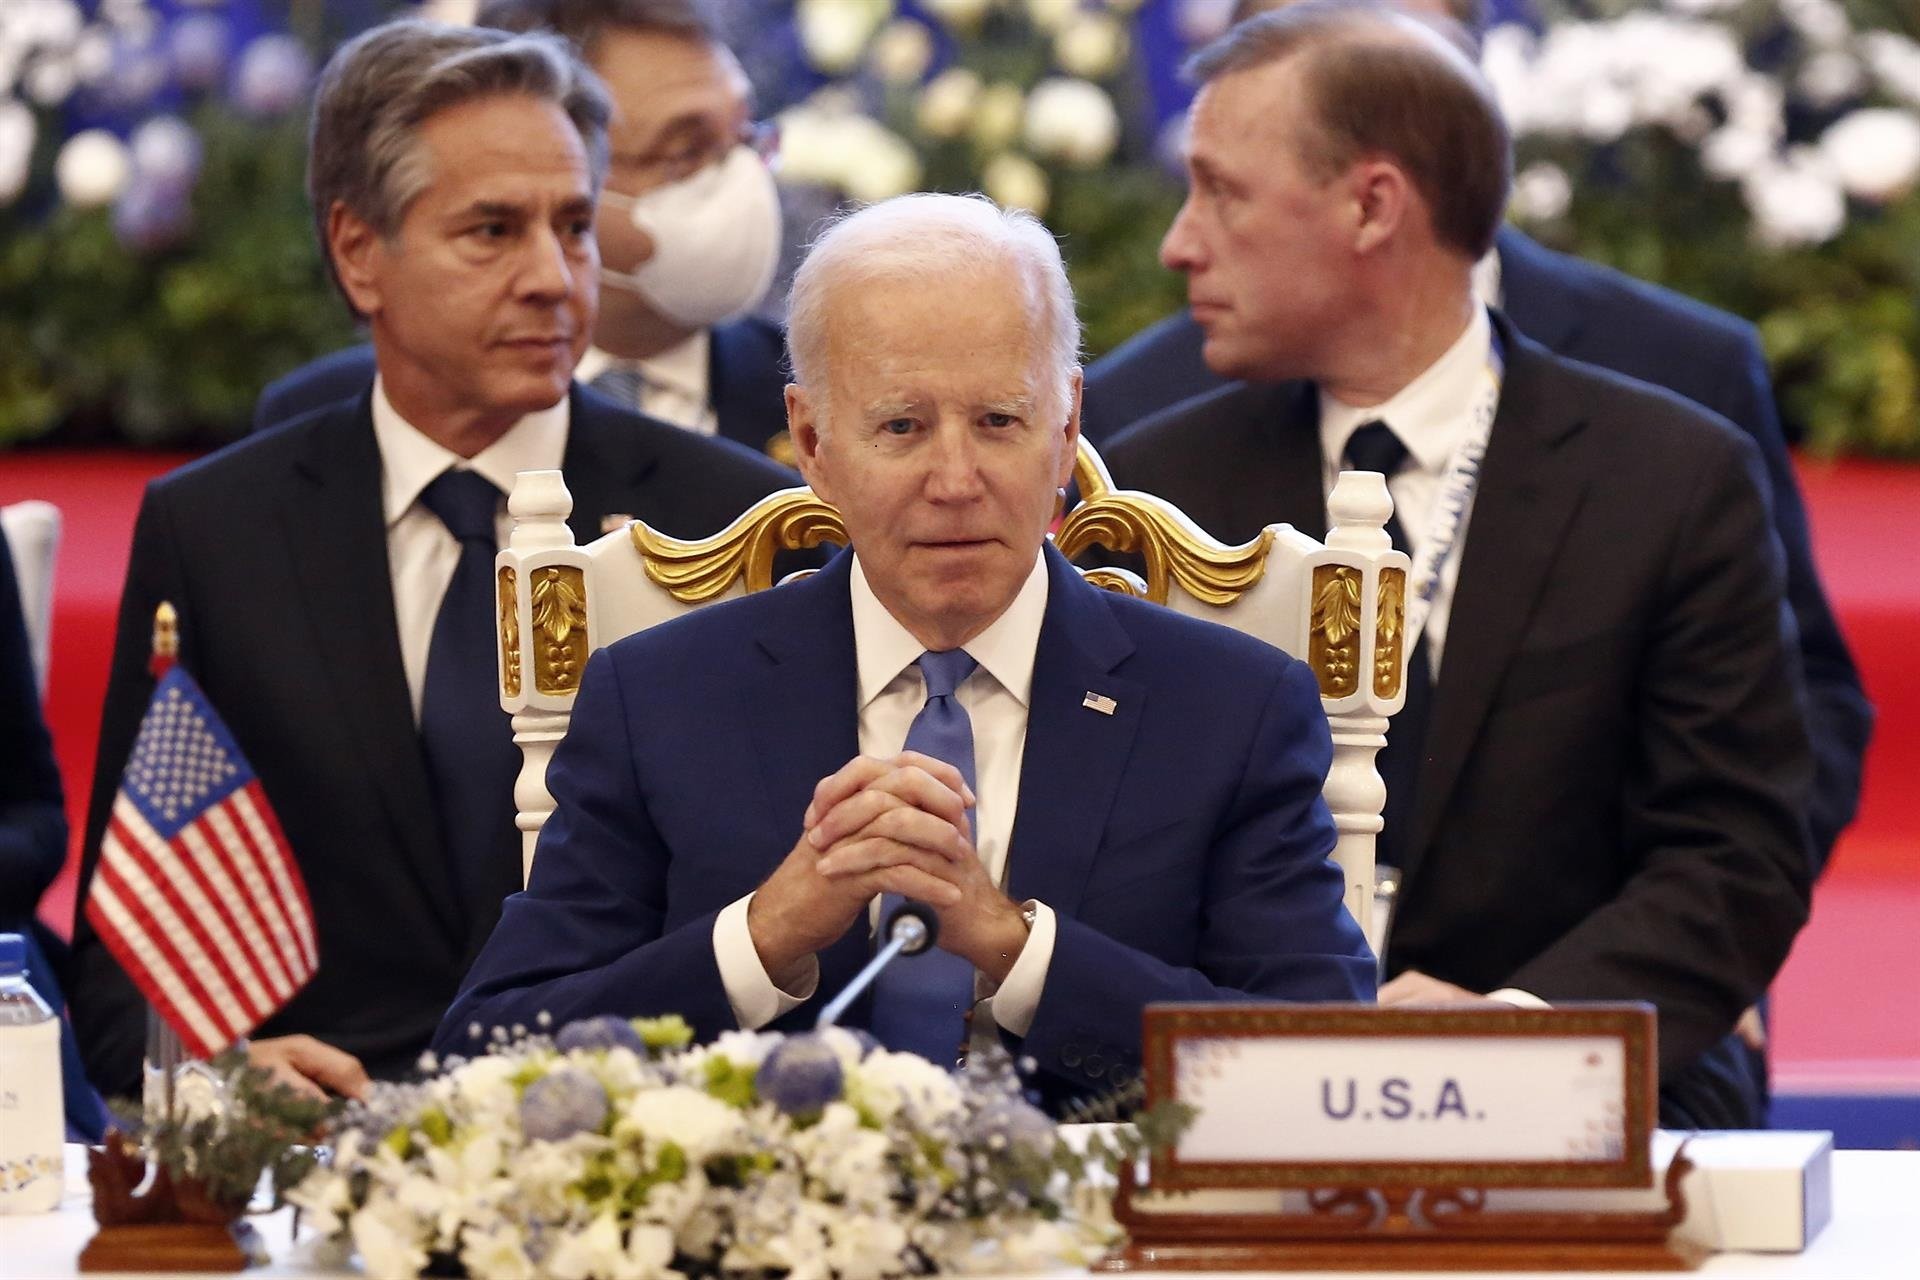 Nou lapsus de Joe Biden: confon ara Cambodja amb Colòmbia